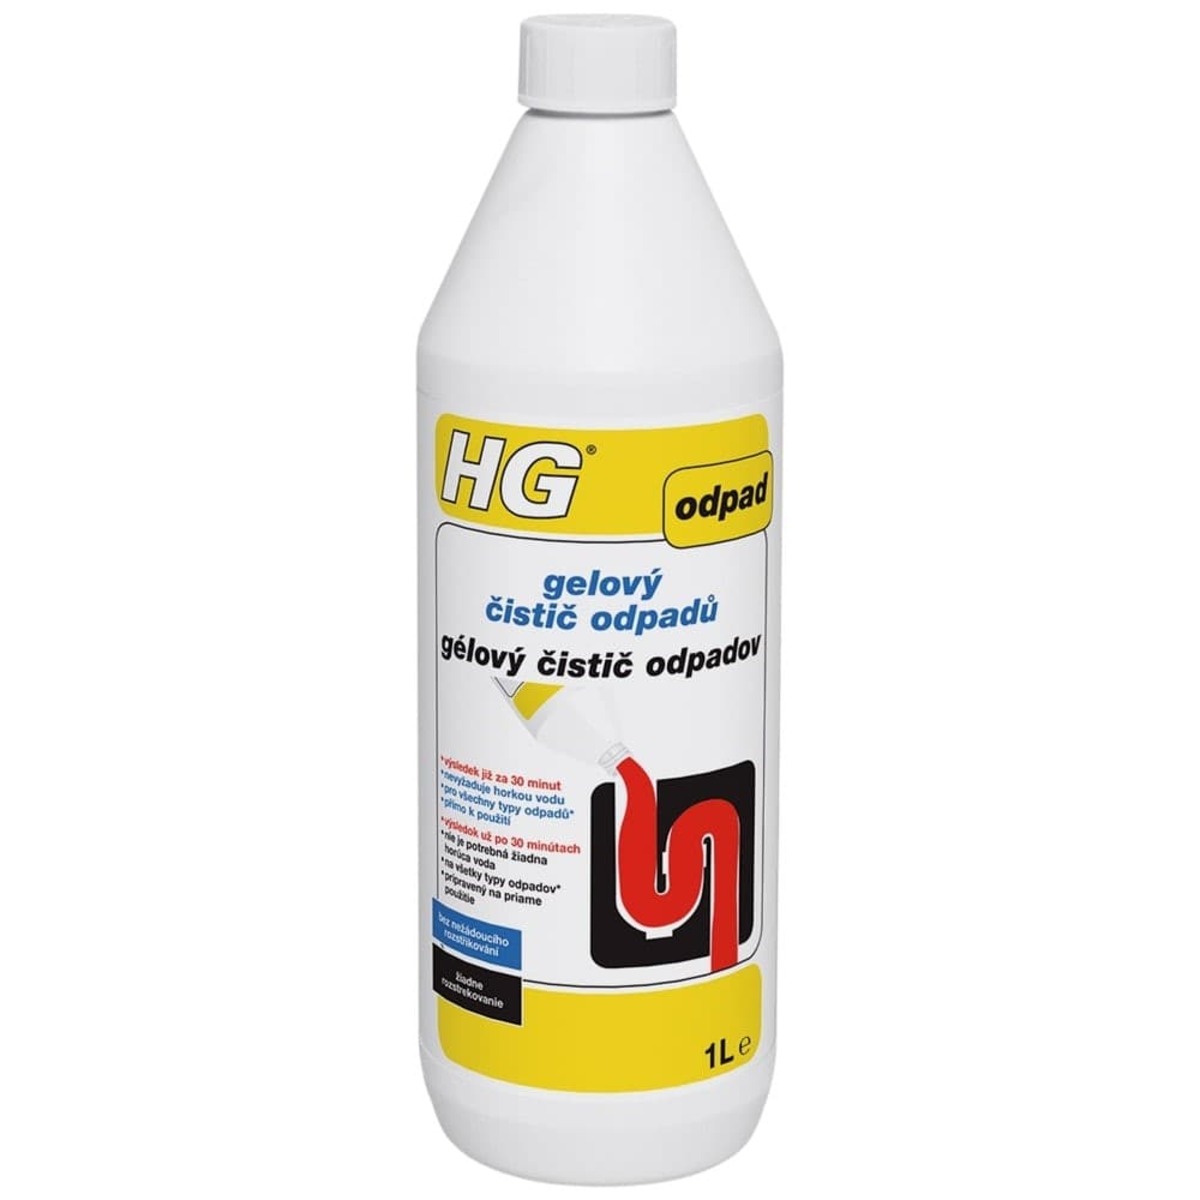 HG gelový čistič odpadů HGGCO HG